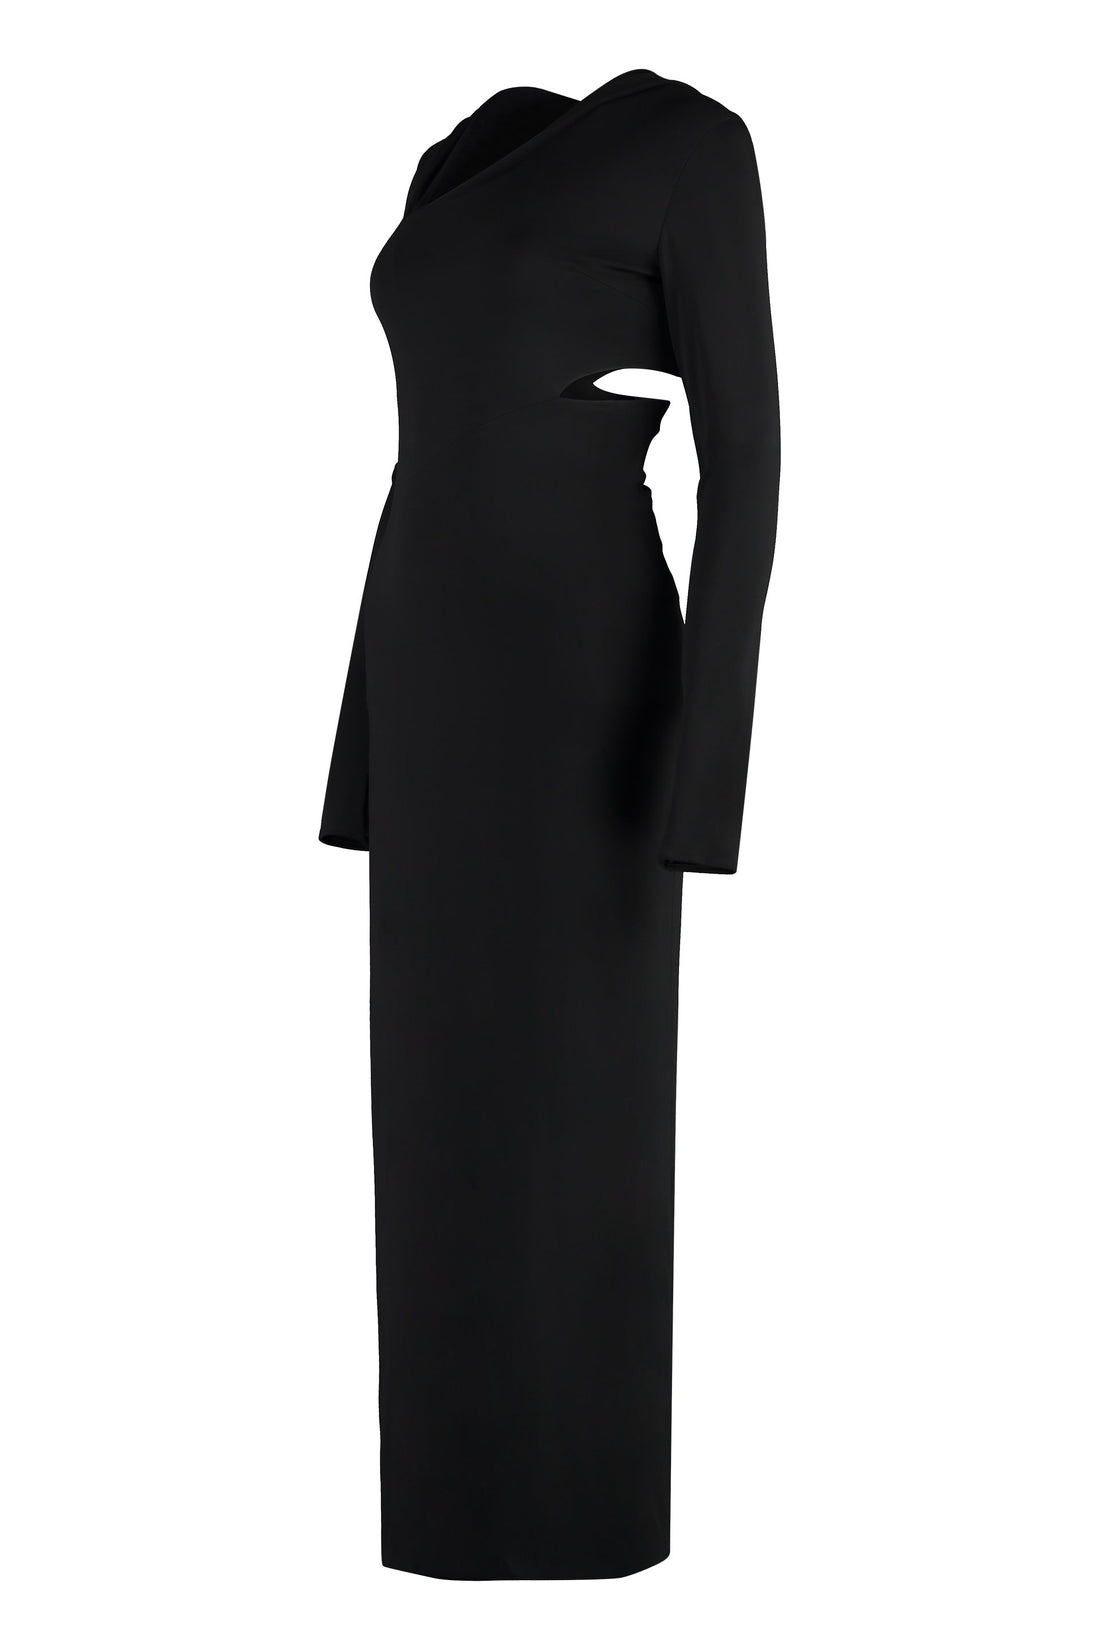 Versace-OUTLET-SALE-Jersey dress-ARCHIVIST